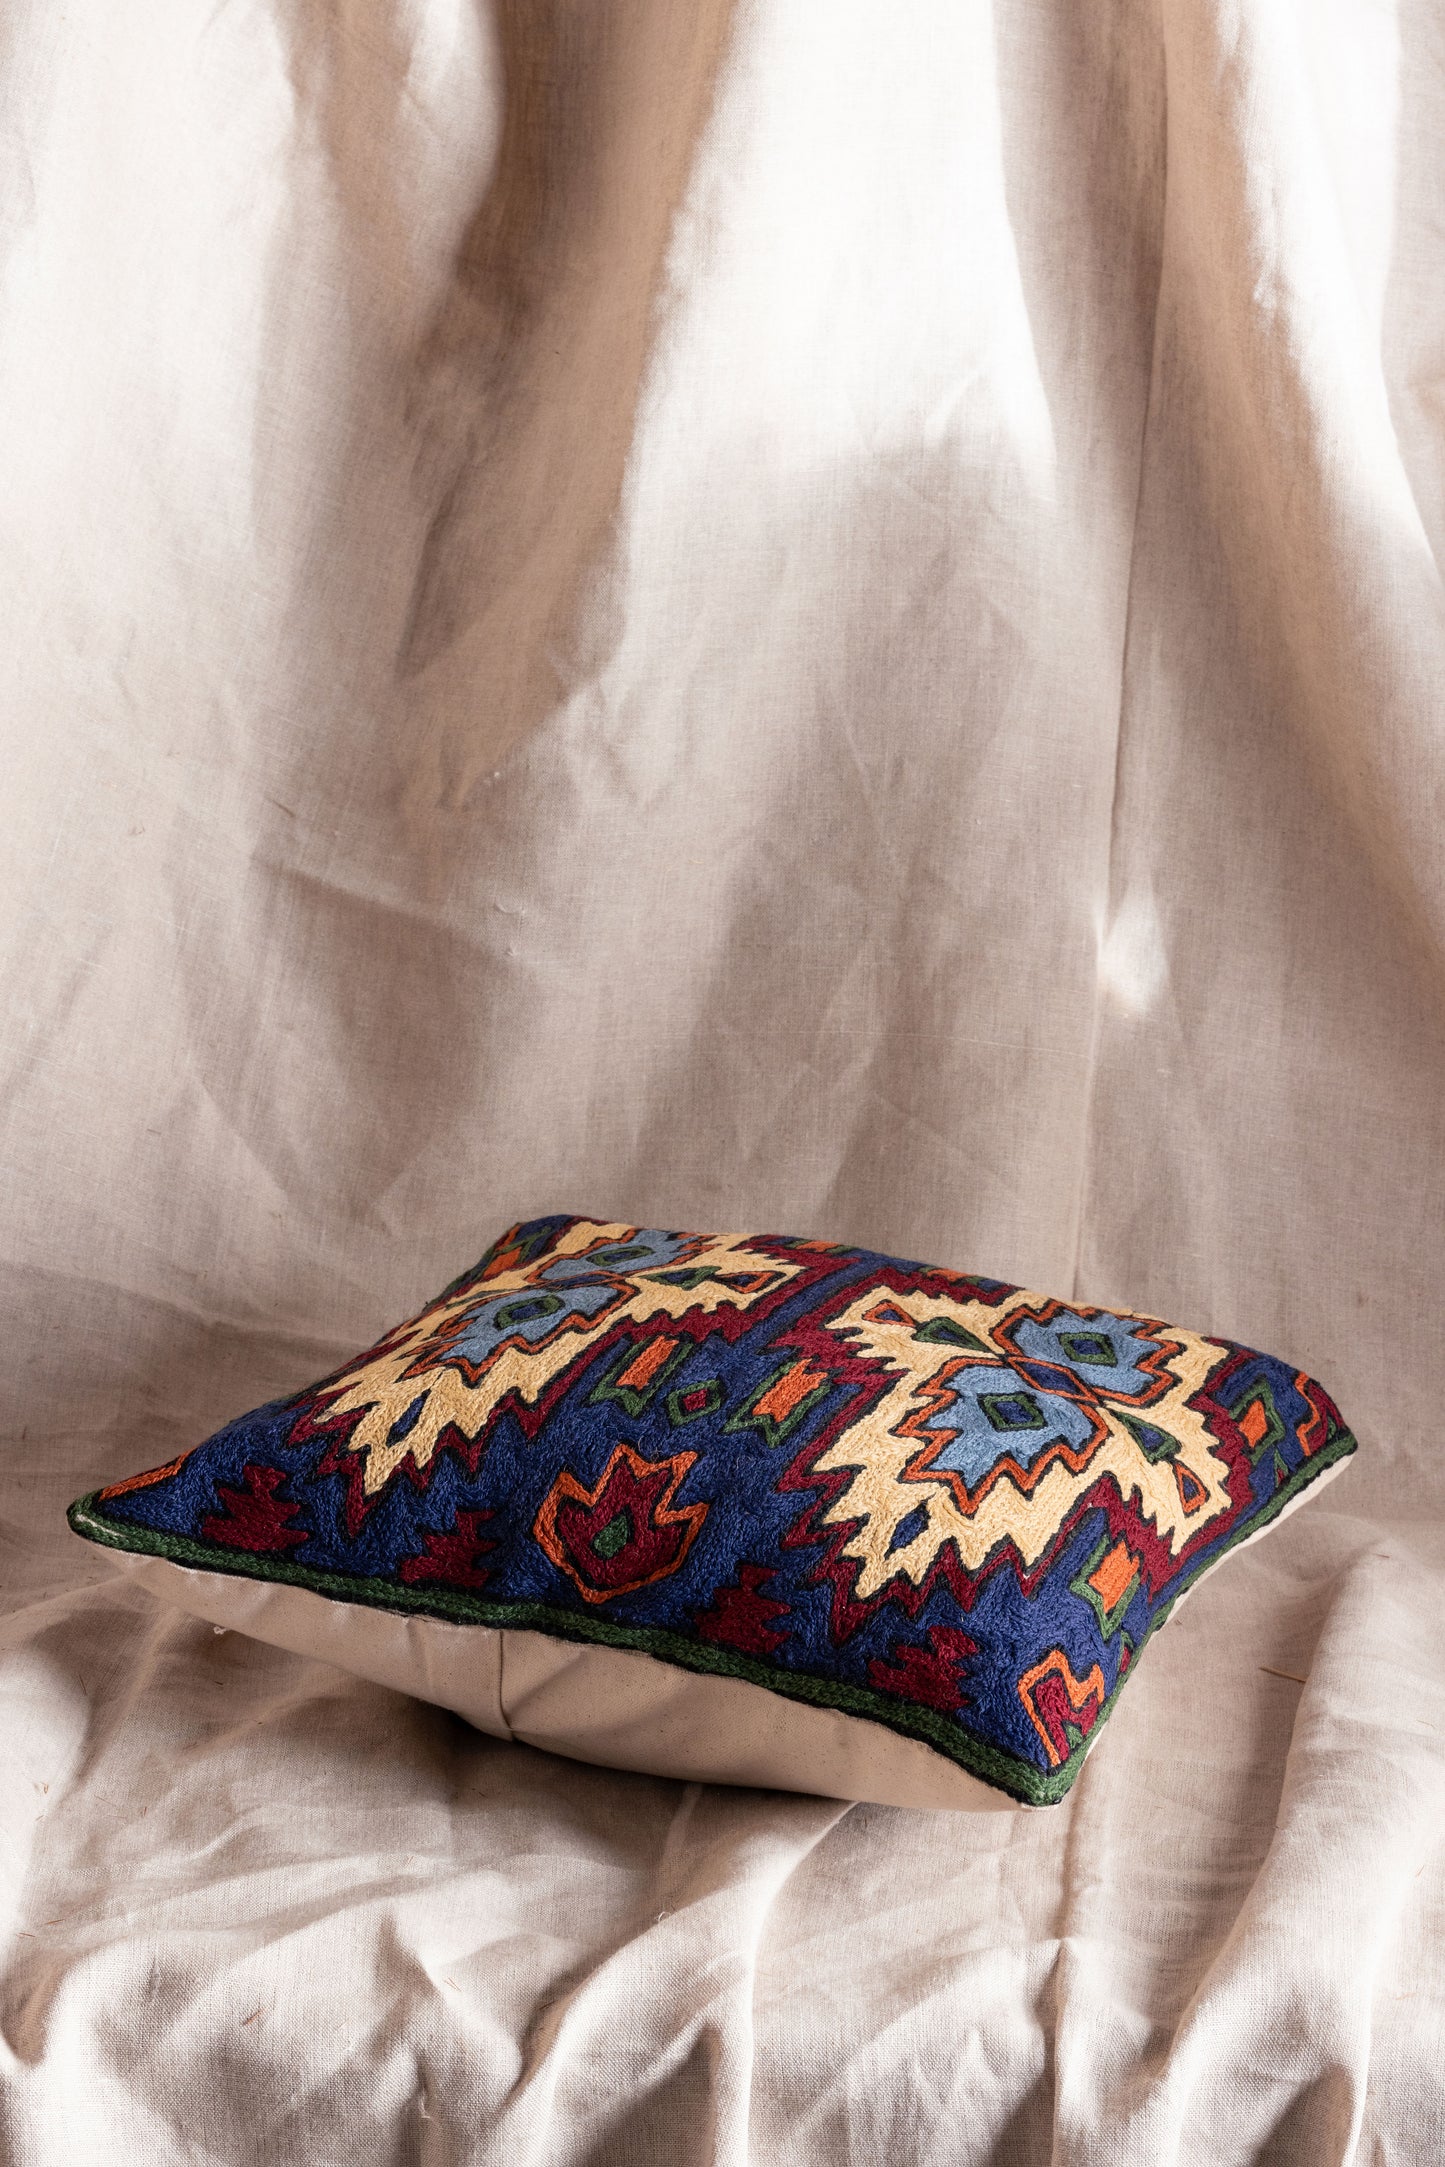 Tribal Cotton Cushion